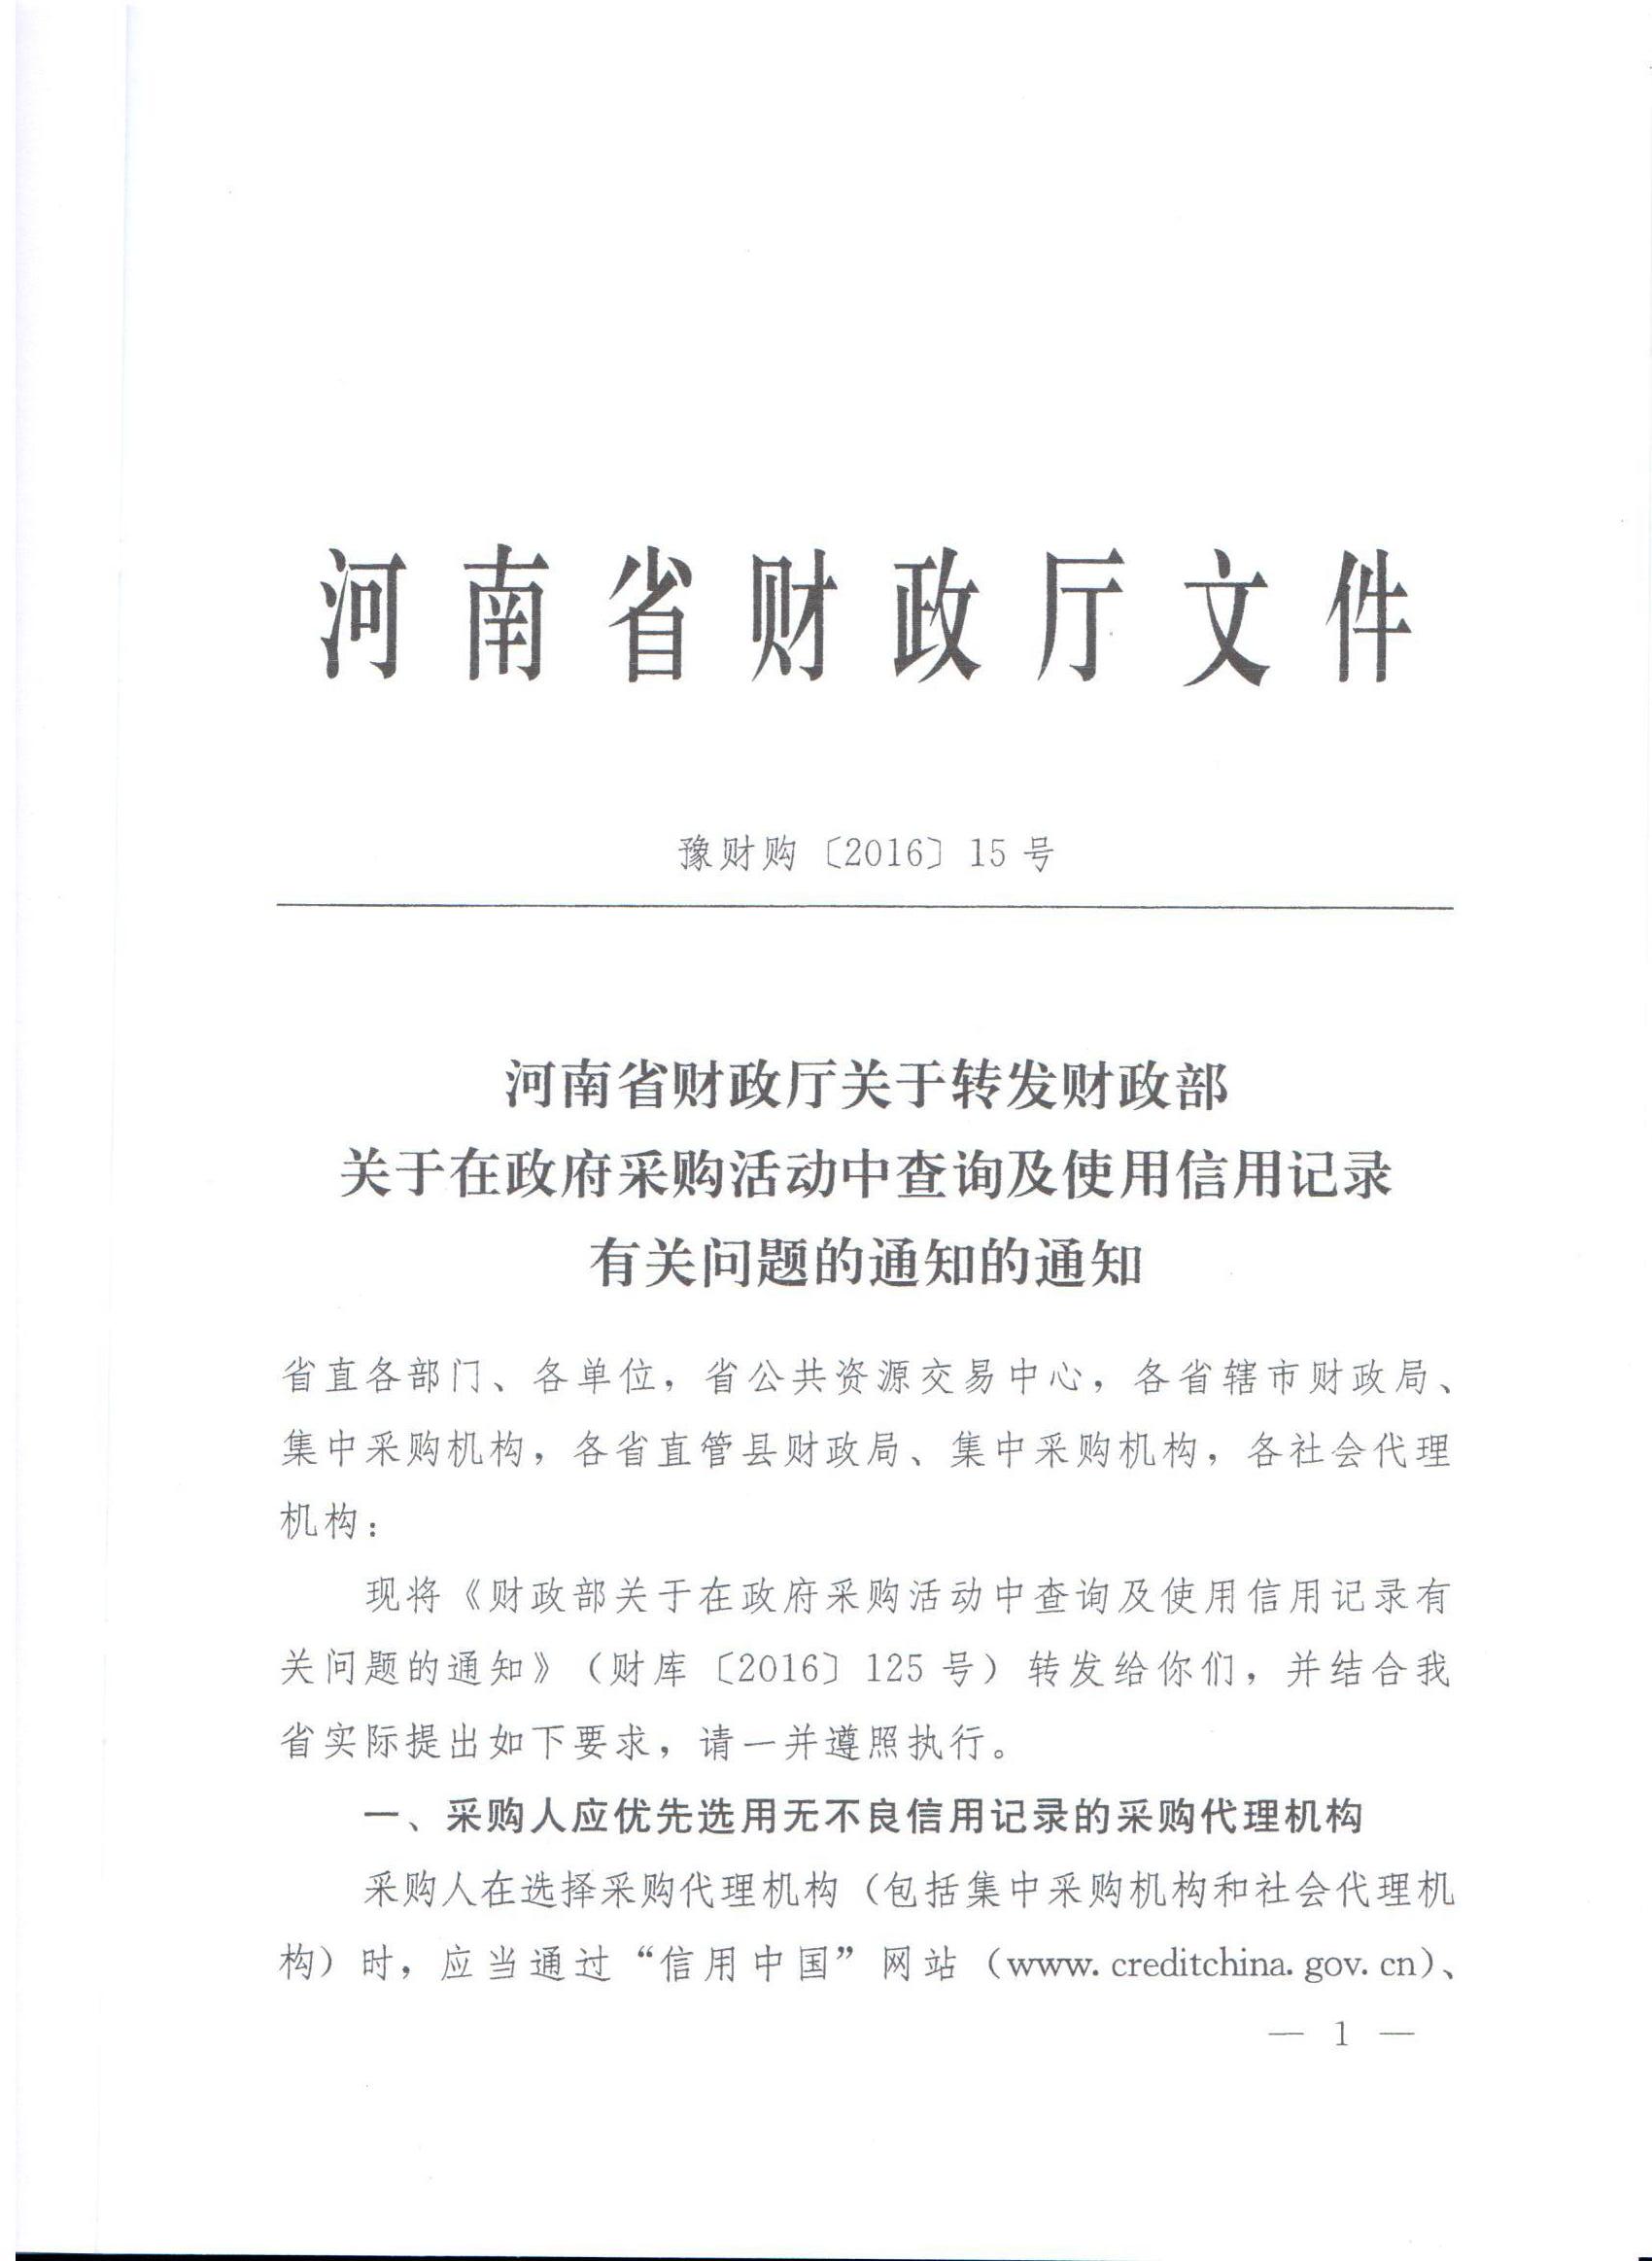 河南省财政厅转发财政部关于在政府采购活动中查询及使用信用记录有关问题的通知的通知